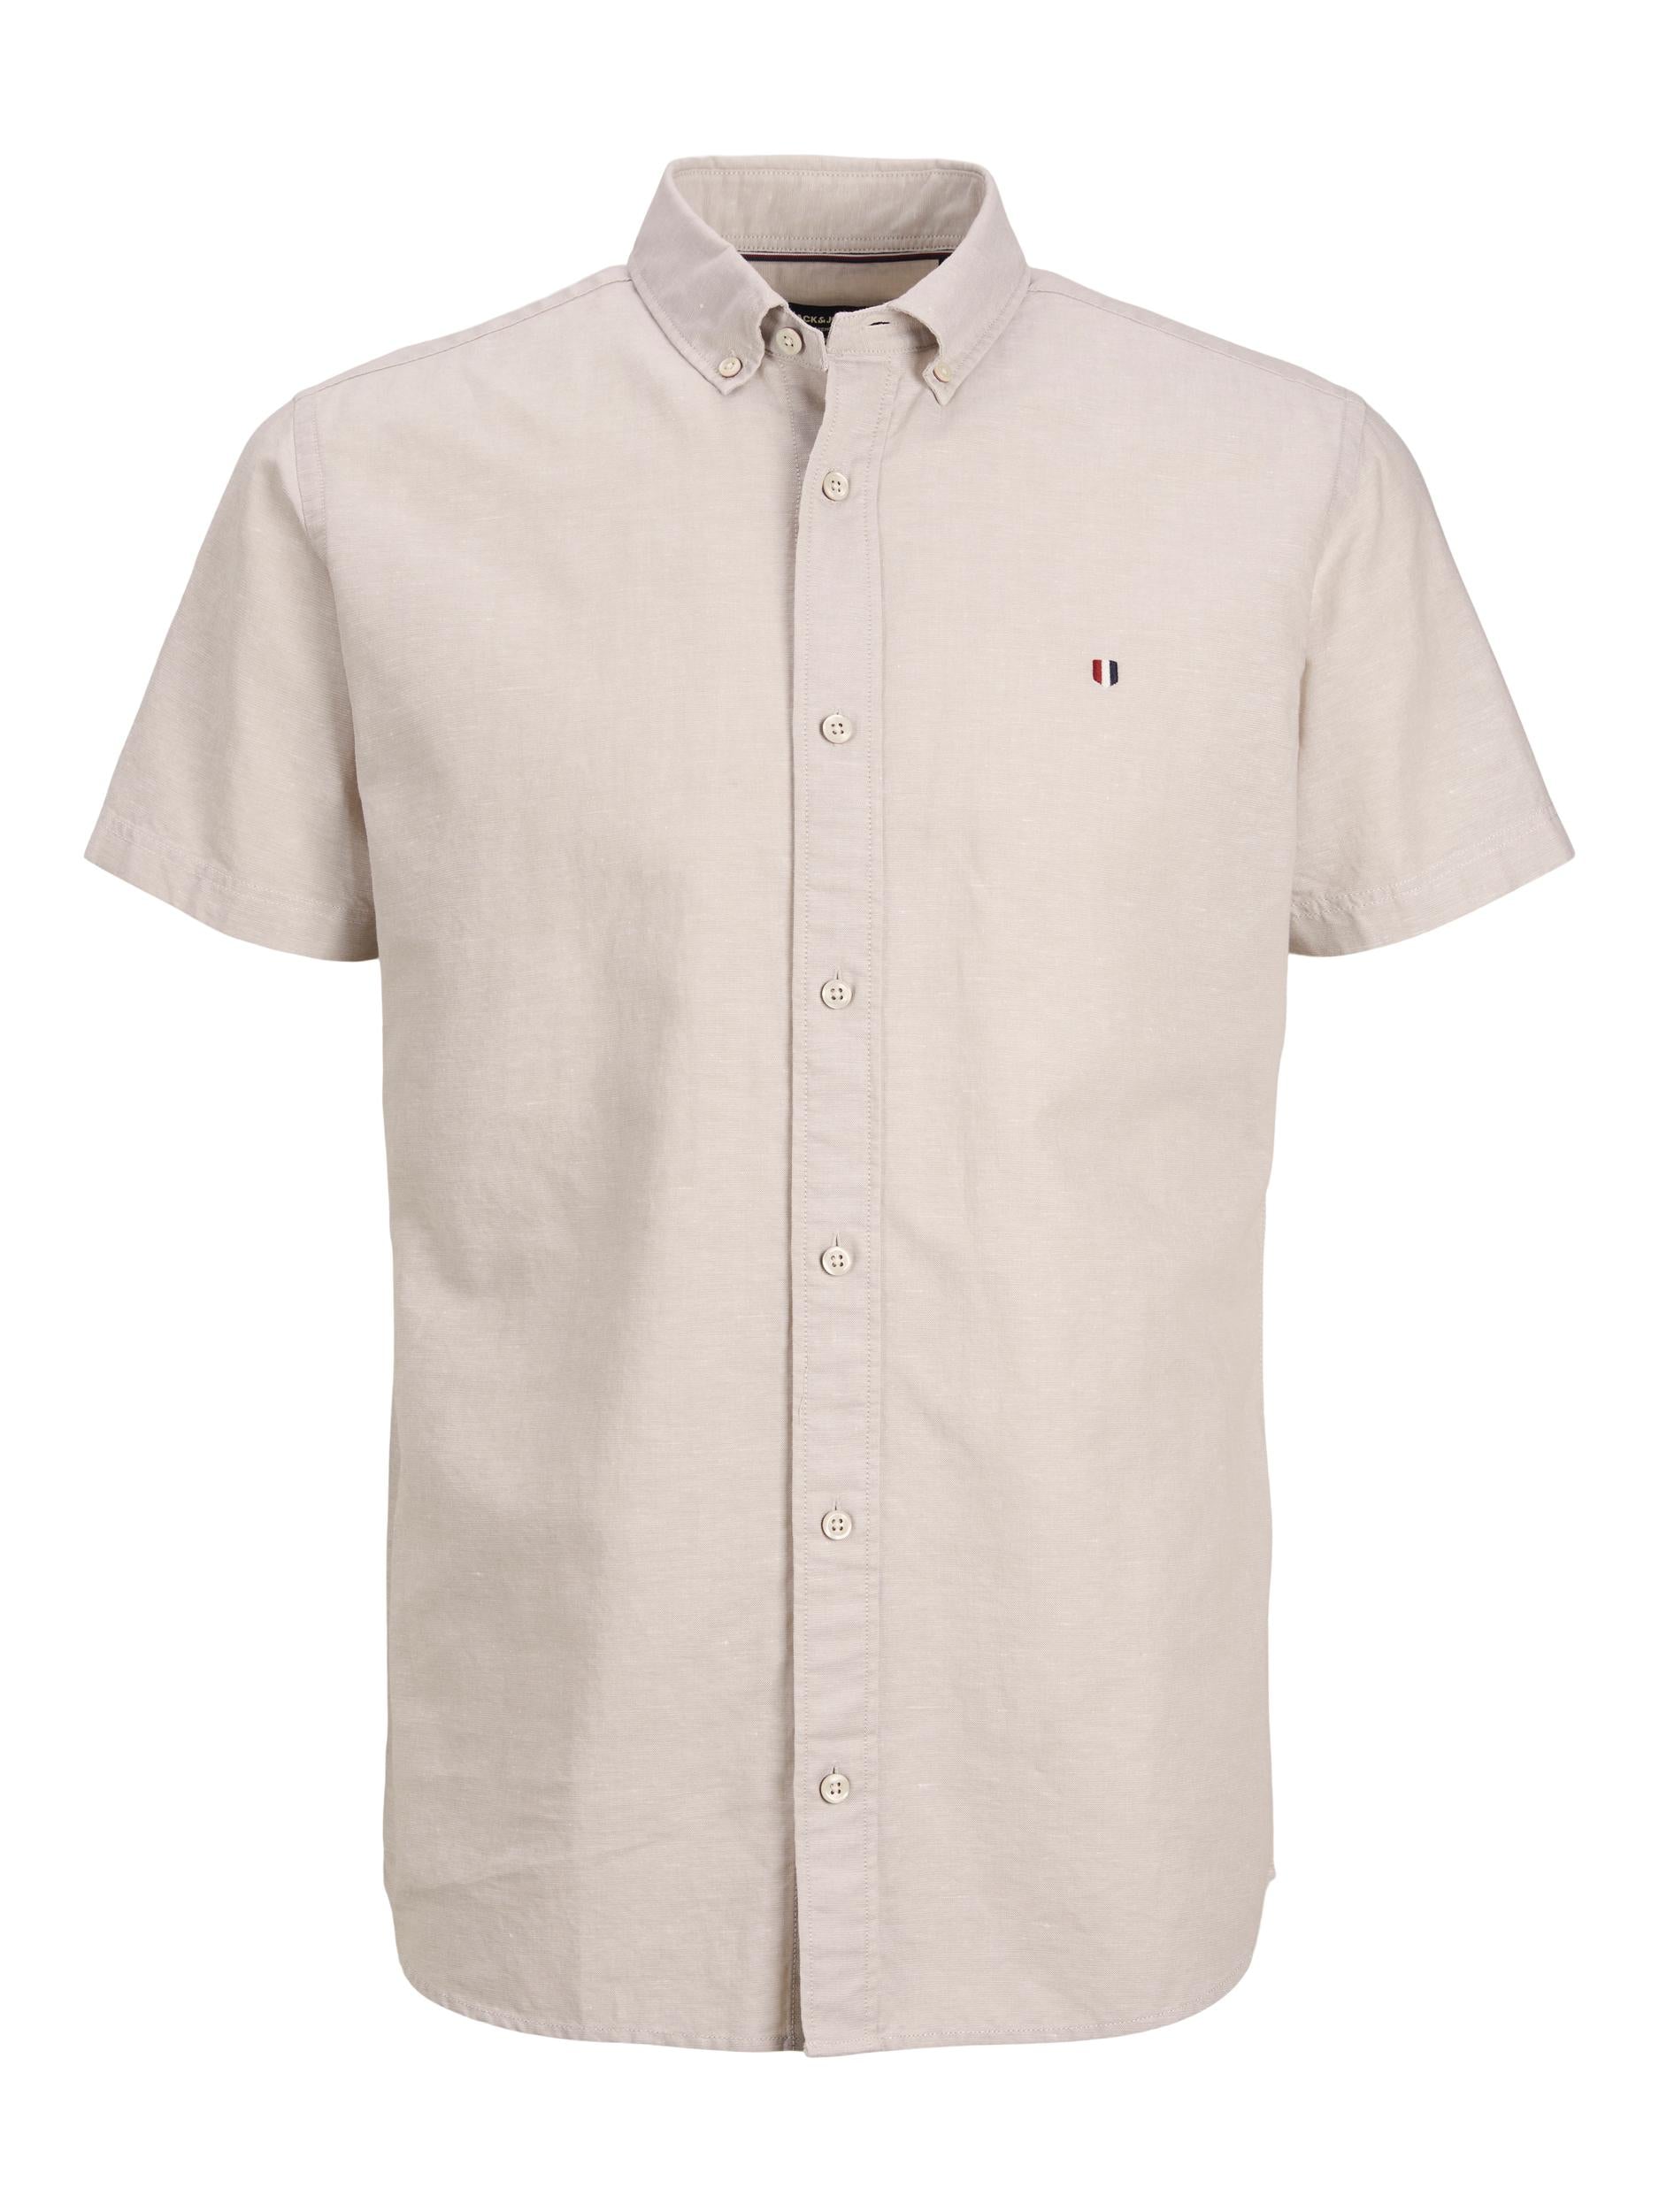 Men's Summer Shield Short Sleeve Crookery Shirt-Front View